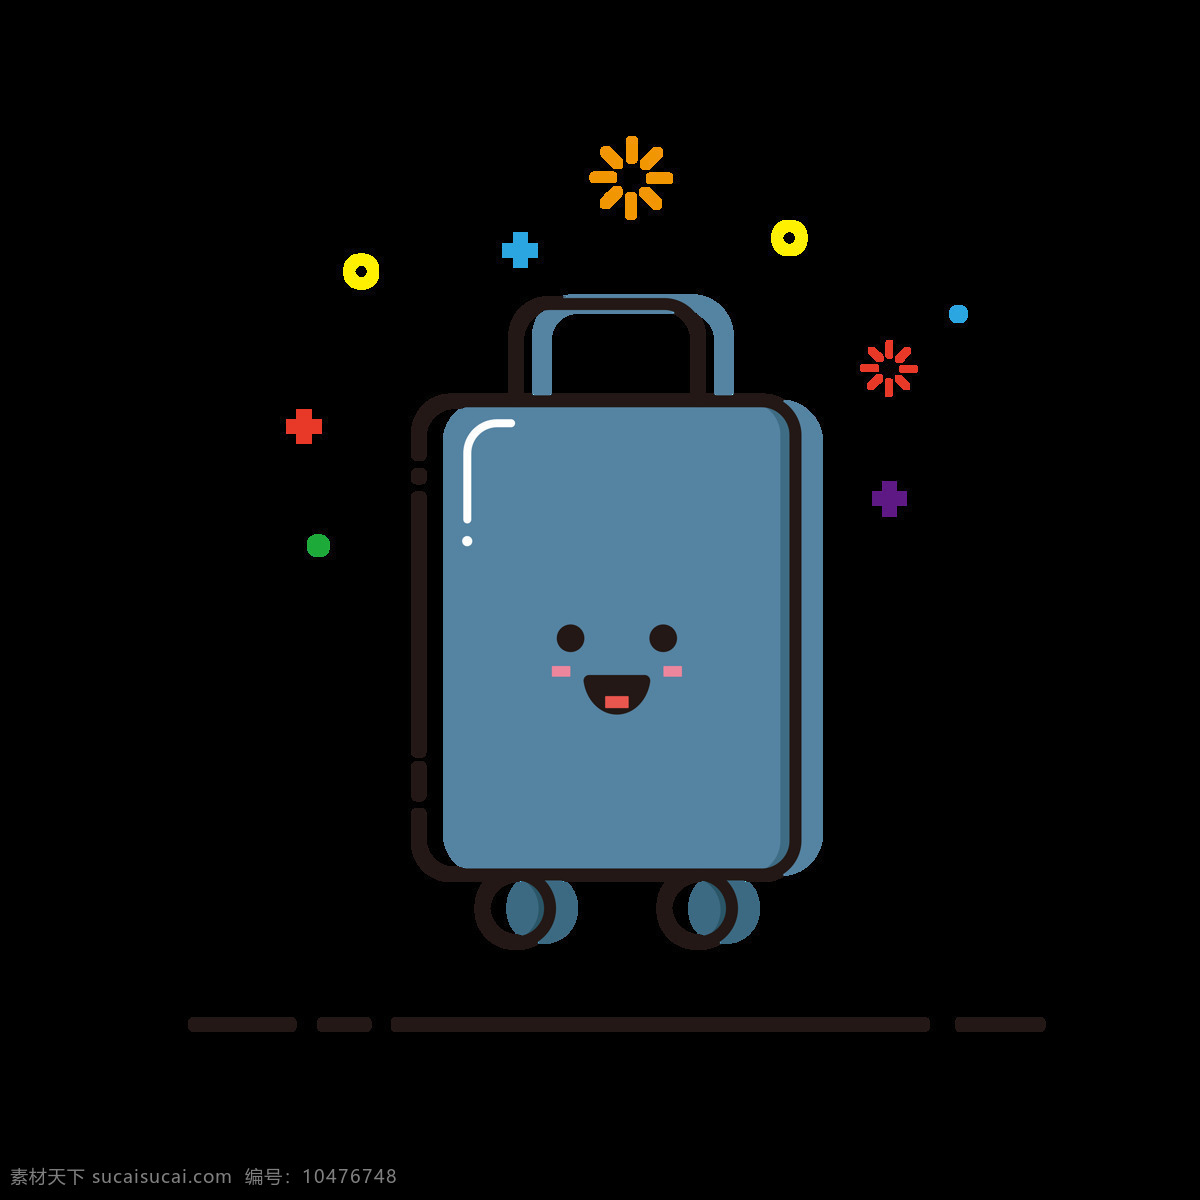 行李箱 mbe 卡通 可爱 矢量 生活用品 元素